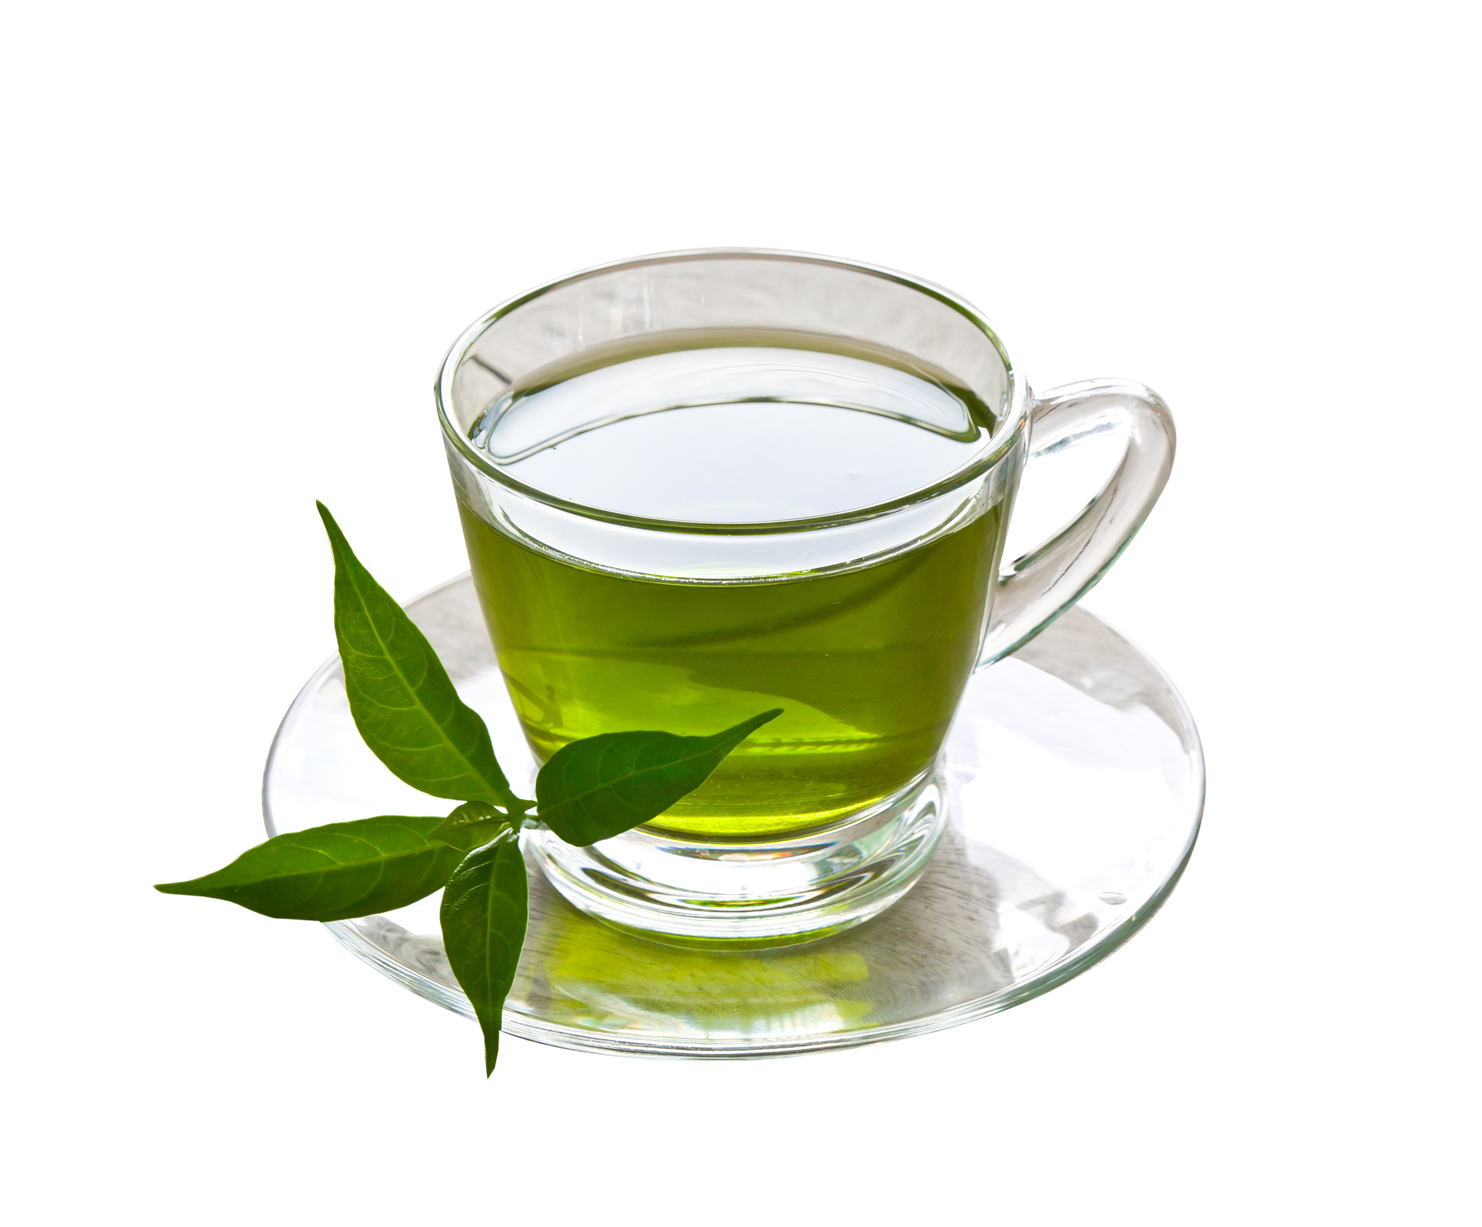 Green Tea PNG